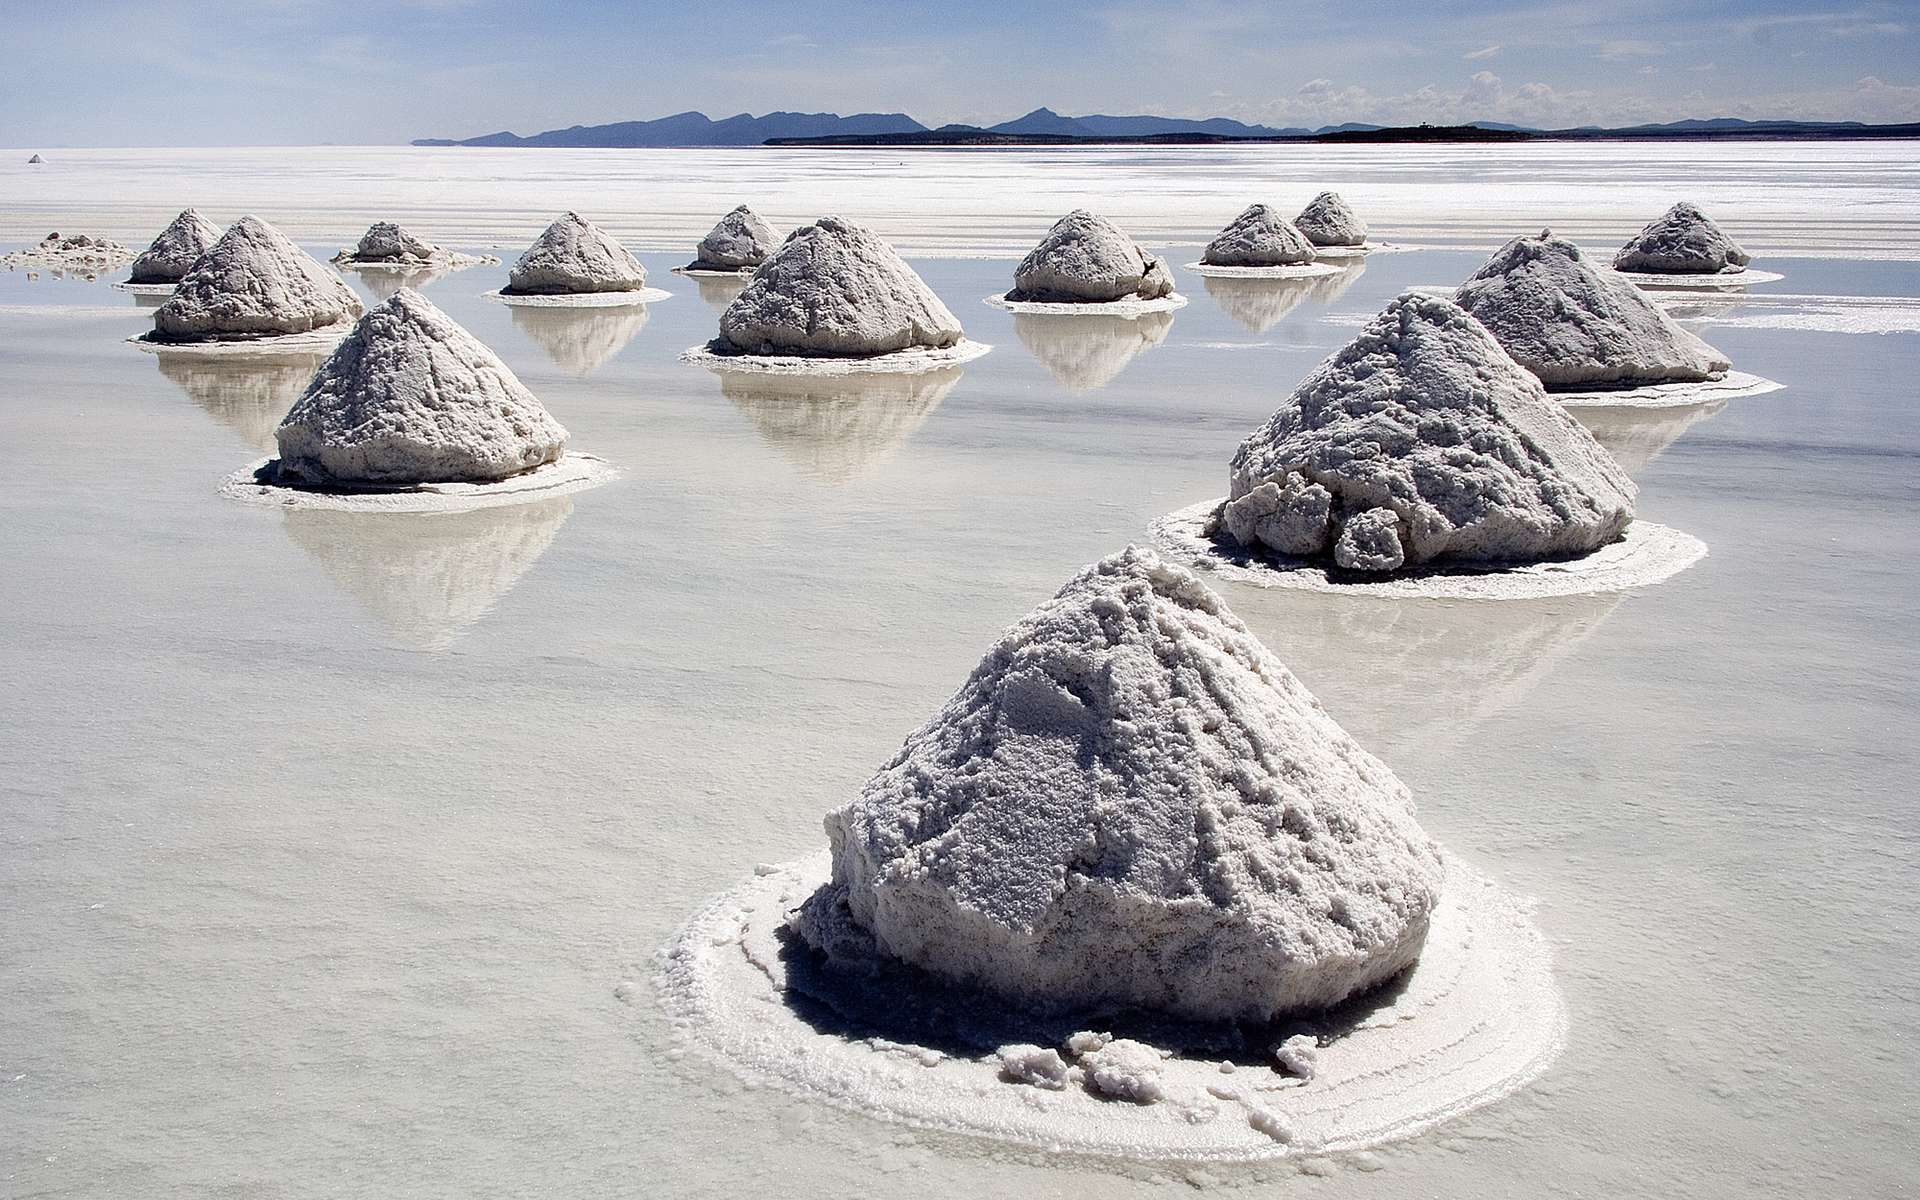 Le salar de Uyuni est le plus grand désert de sel du monde. Situé en Bolivie, il recouvre une vaste réserve de lithium. Sa formation remonte à 10.000 ans, quand l'étendue d'eau salée était une partie du lac Minchin, un lac préhistorique géant. Ainsi, comme pour les marnes du Jura, c'est une source de sel gemme. © Luca Galuzzi, cc by sa 2.5